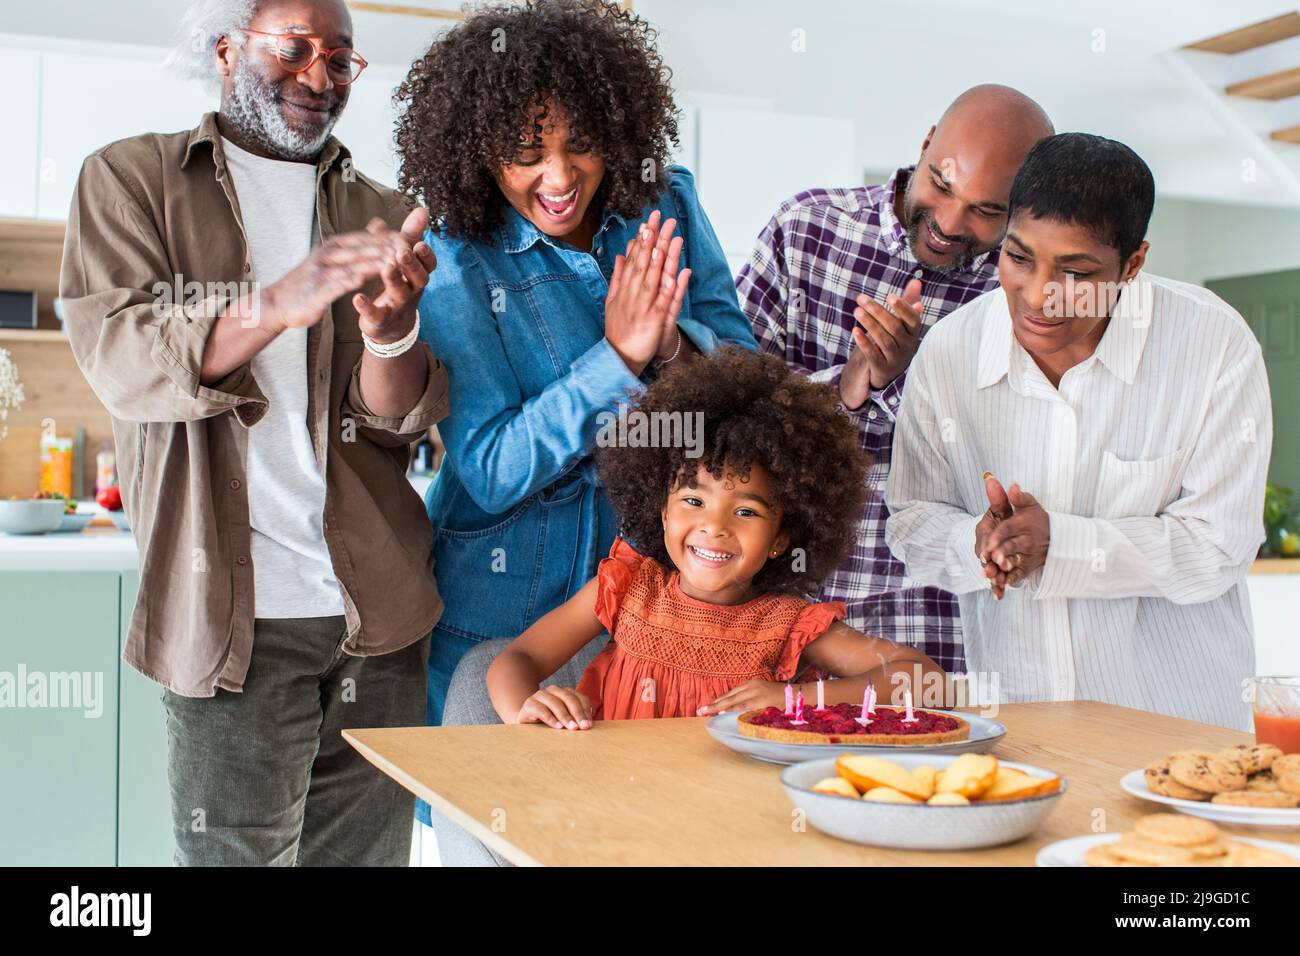 Happy family celebrating birthday at home Stock Photo